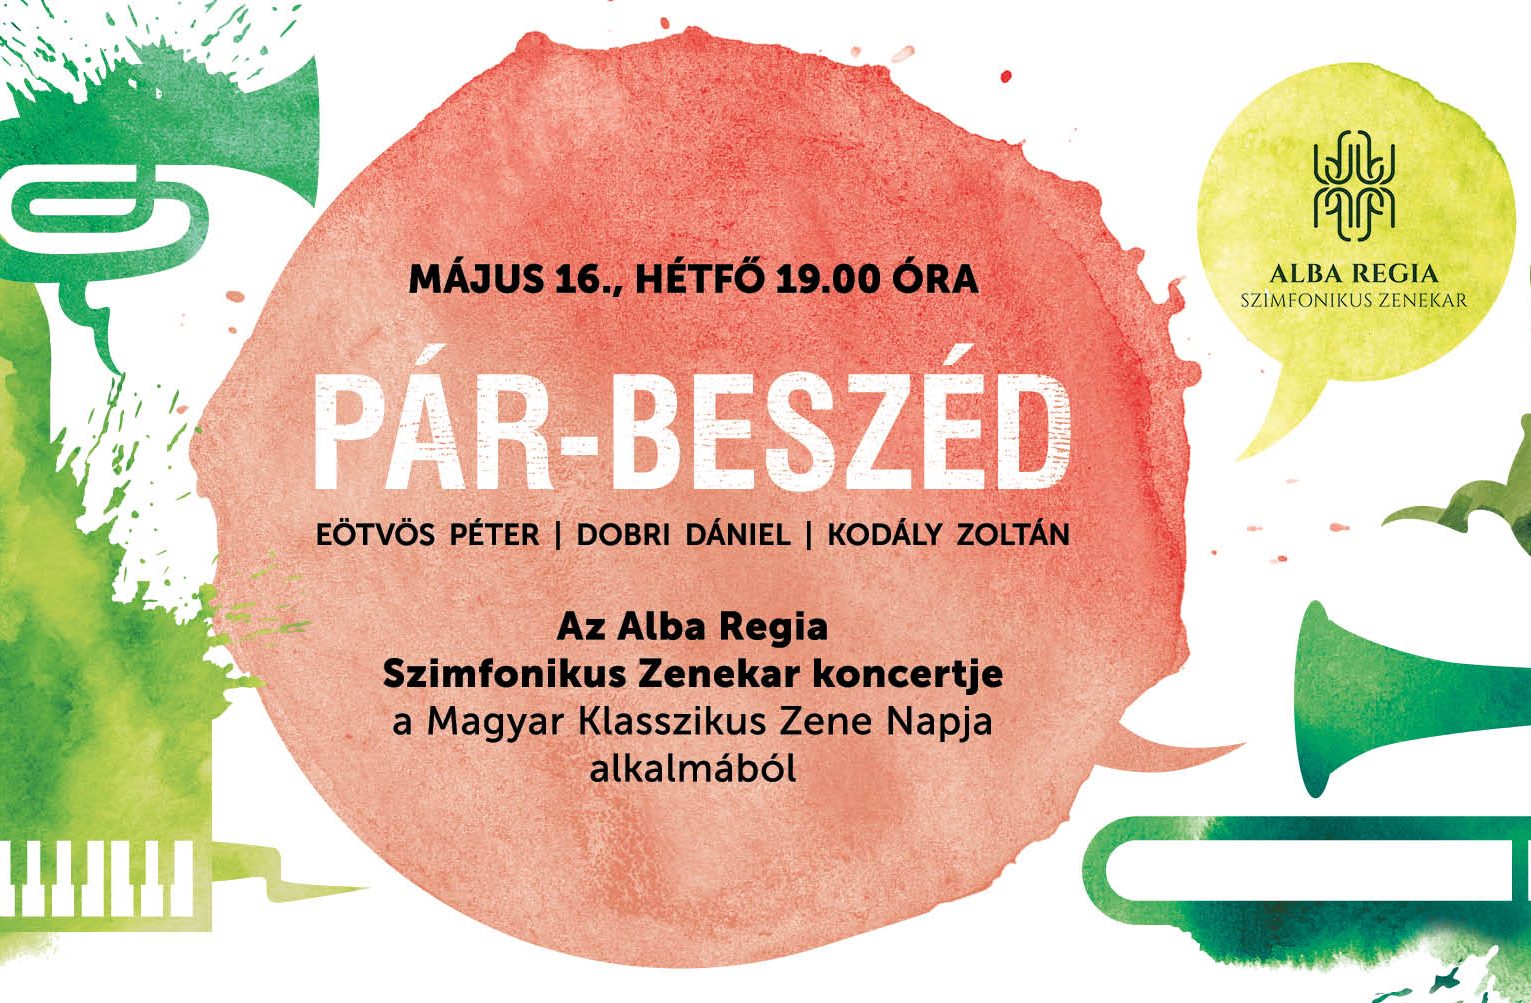 PÁR-BESZÉD, az ARSO Magyar Klasszikus Zene napi koncertje